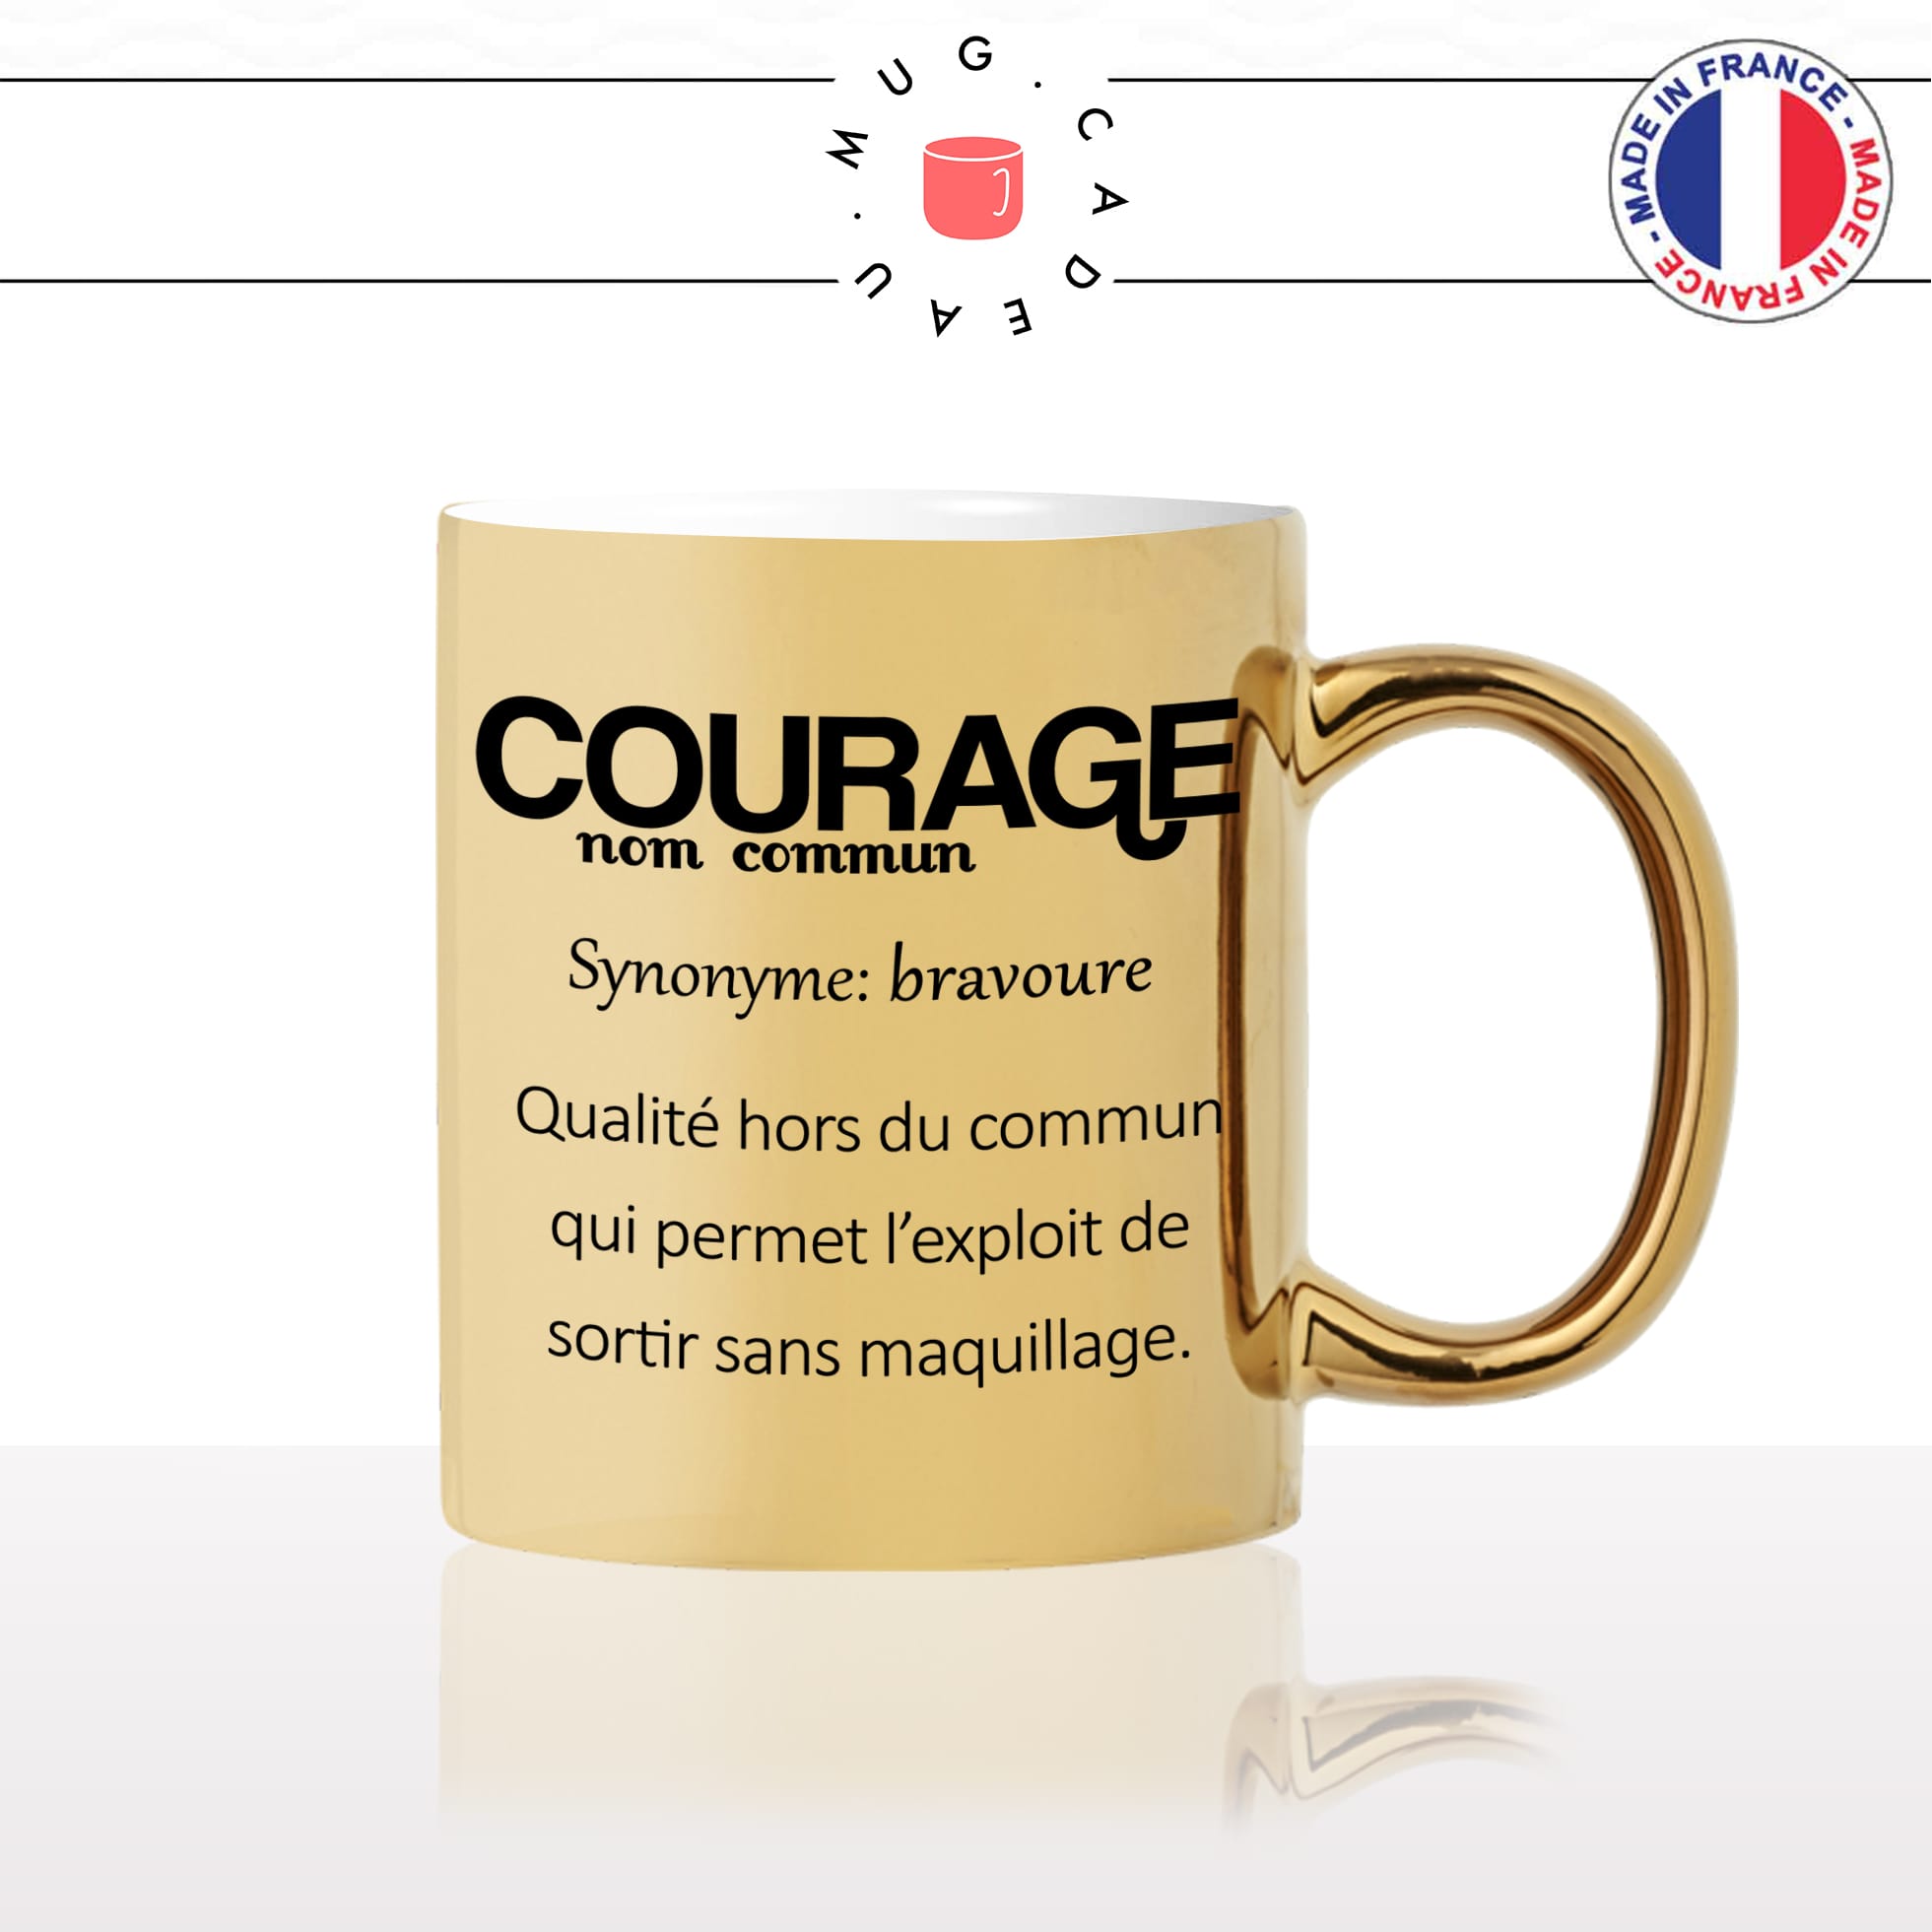 mug-tasse-doré-or-gold-courage-définition-sortir-sans-maquillage-make-up-femme-fille-humour-fun-idée-cadeau-personnalisé-café-thé2-min